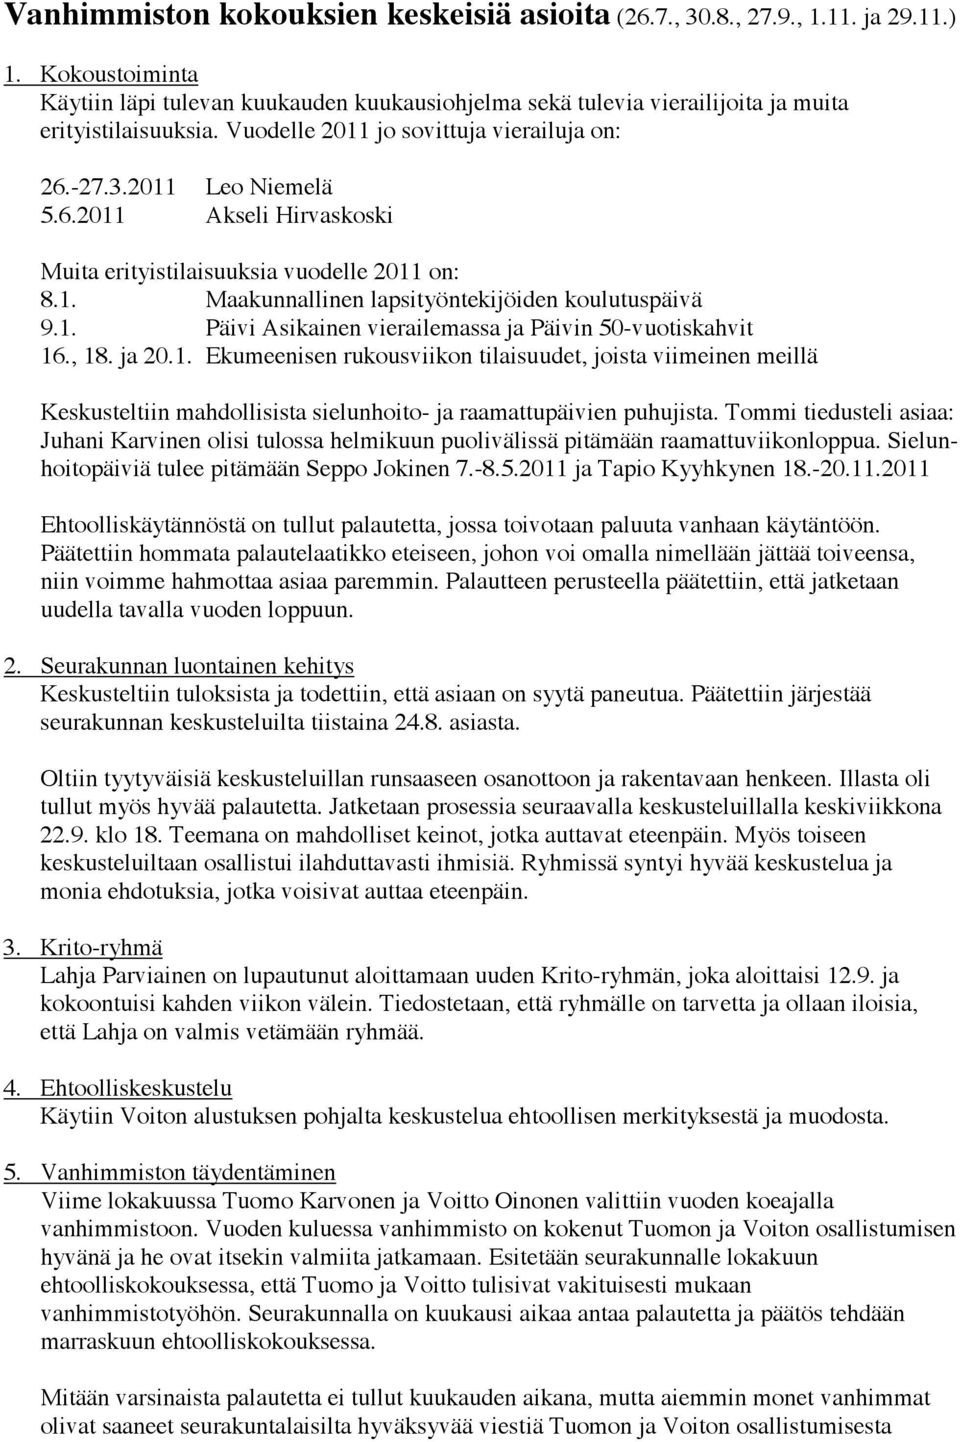 -27.3.2011 Leo Niemelä 5.6.2011 Akseli Hirvaskoski Muita erityistilaisuuksia vuodelle 2011 on: 8.1. Maakunnallinen lapsityöntekijöiden koulutuspäivä 9.1. Päivi Asikainen vierailemassa ja Päivin 50-vuotiskahvit 16.